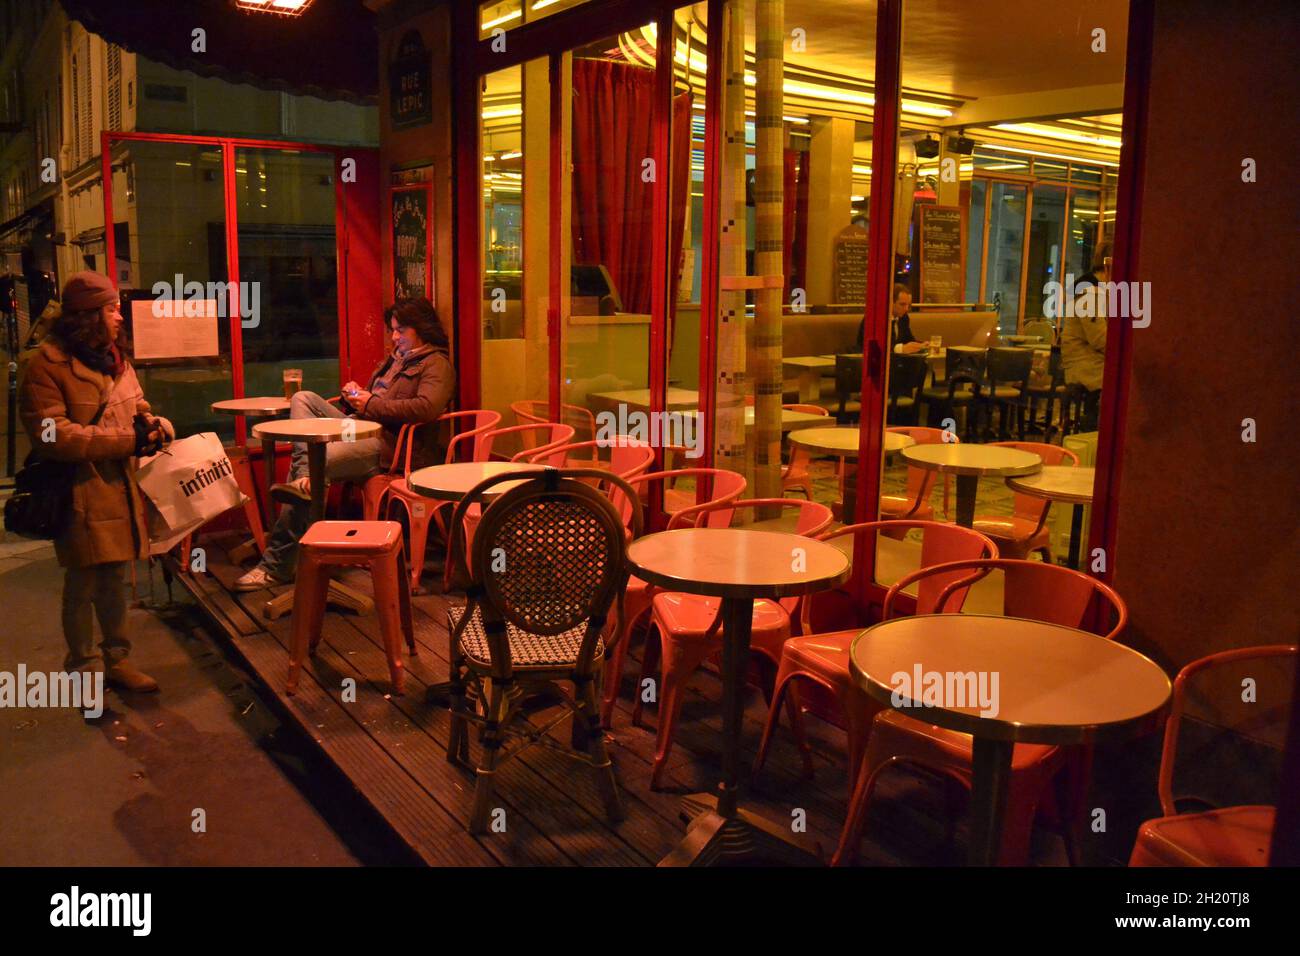 FRANKREICH, PARIS. 20.02.2012. Sehr süße, farbenfrohe und pinke Café-Fassade in der Pariser Straße während der Nacht. Stockfoto